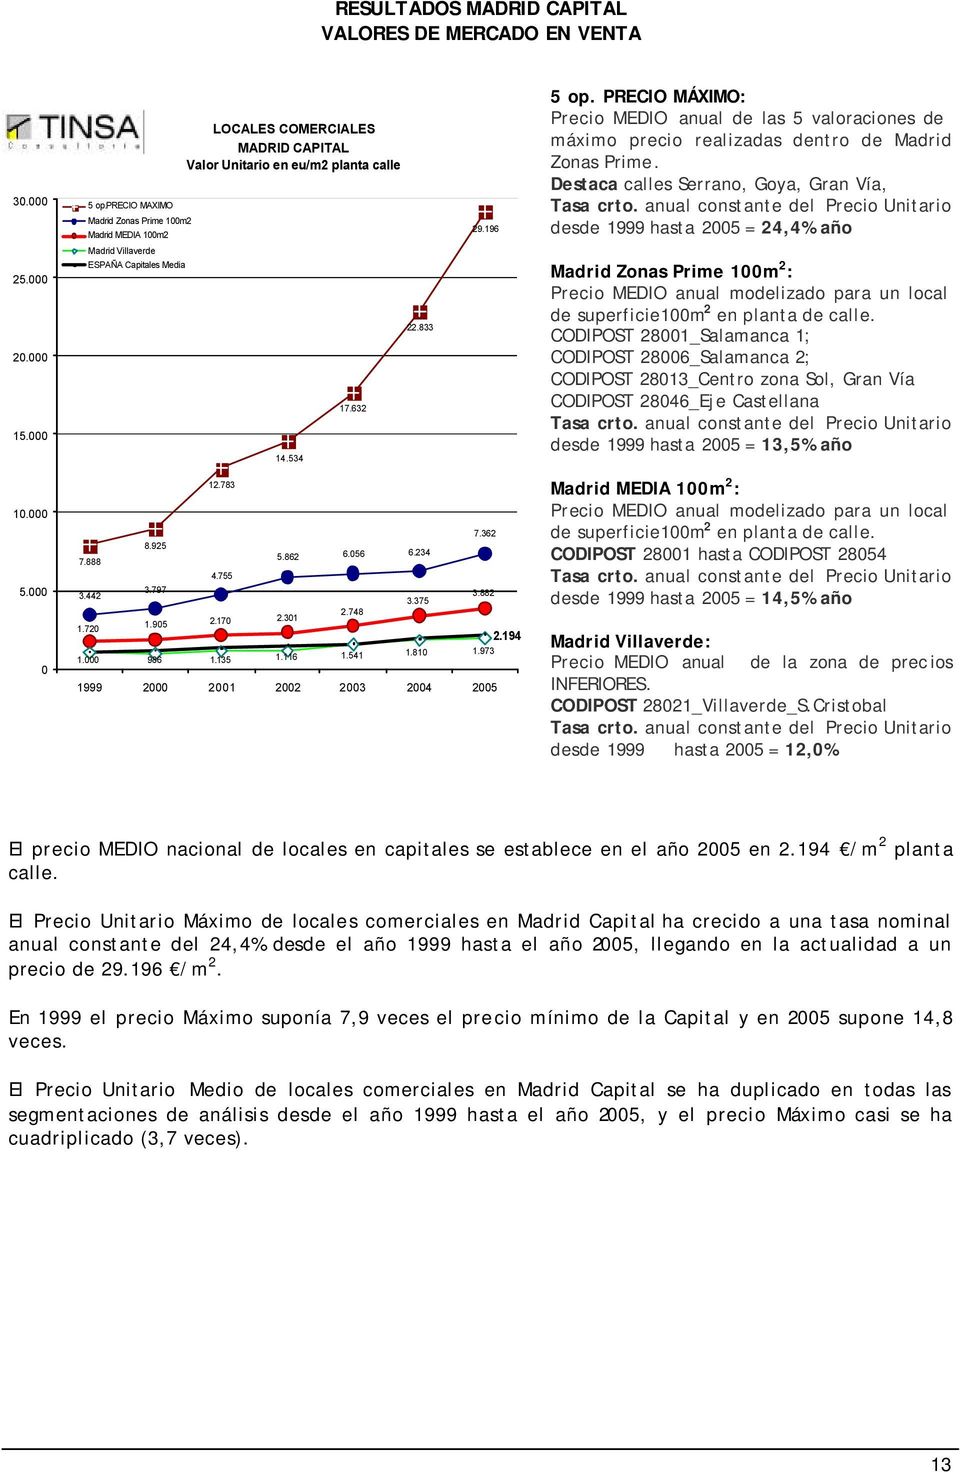 anual constante del Precio Unitario desde 1999 hasta 2005 = 24,4% año Madrid Villaverde 25.000 20.000 15.000 ESPAÑA Capitales Media 14.534 17.632 22.